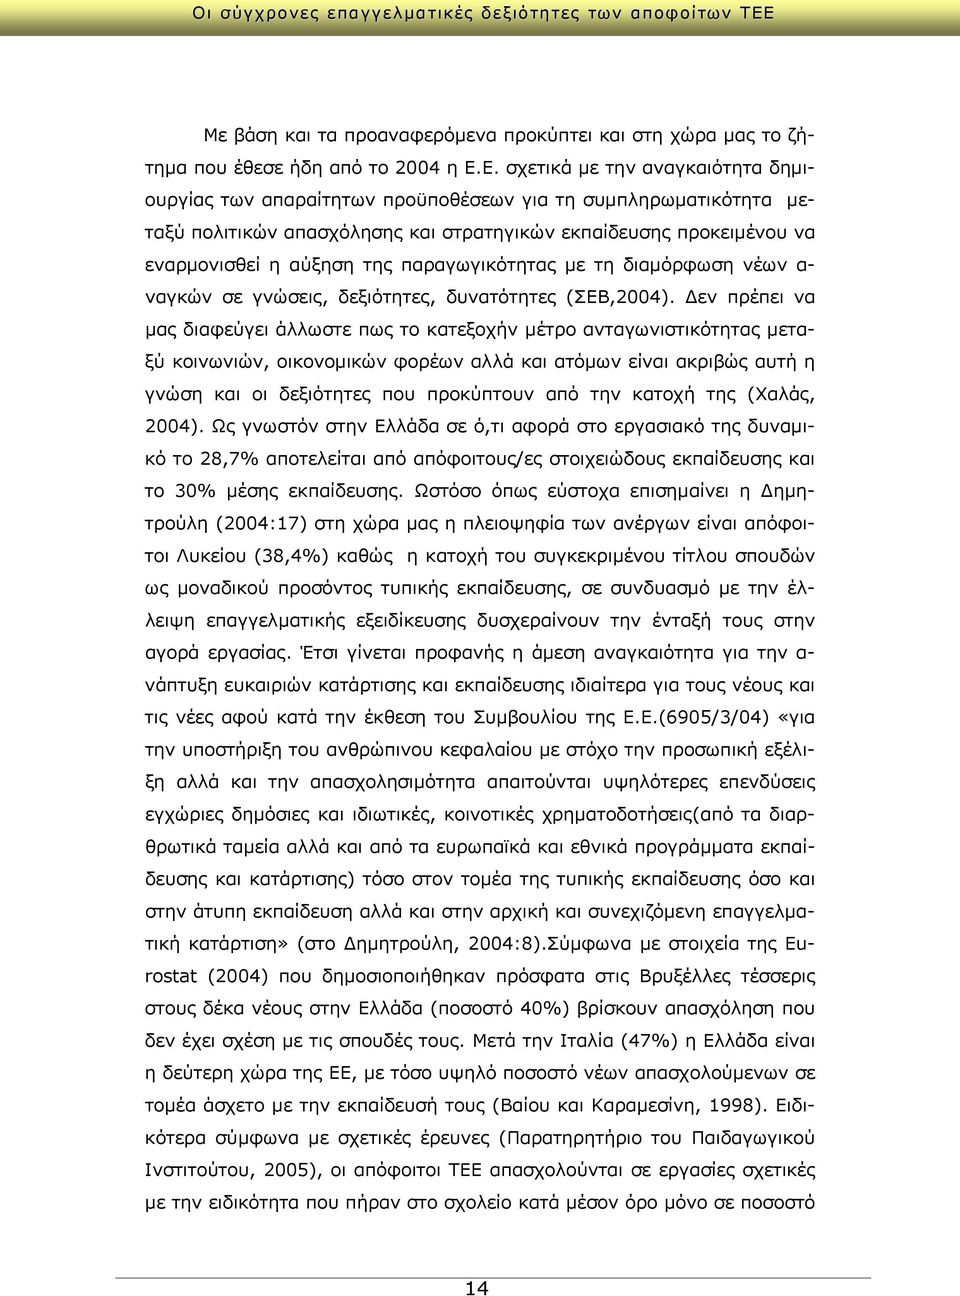 παραγωγικότητας με τη διαμόρφωση νέων α- ναγκών σε γνώσεις, δεξιότητες, δυνατότητες (ΣΕΒ,2004).